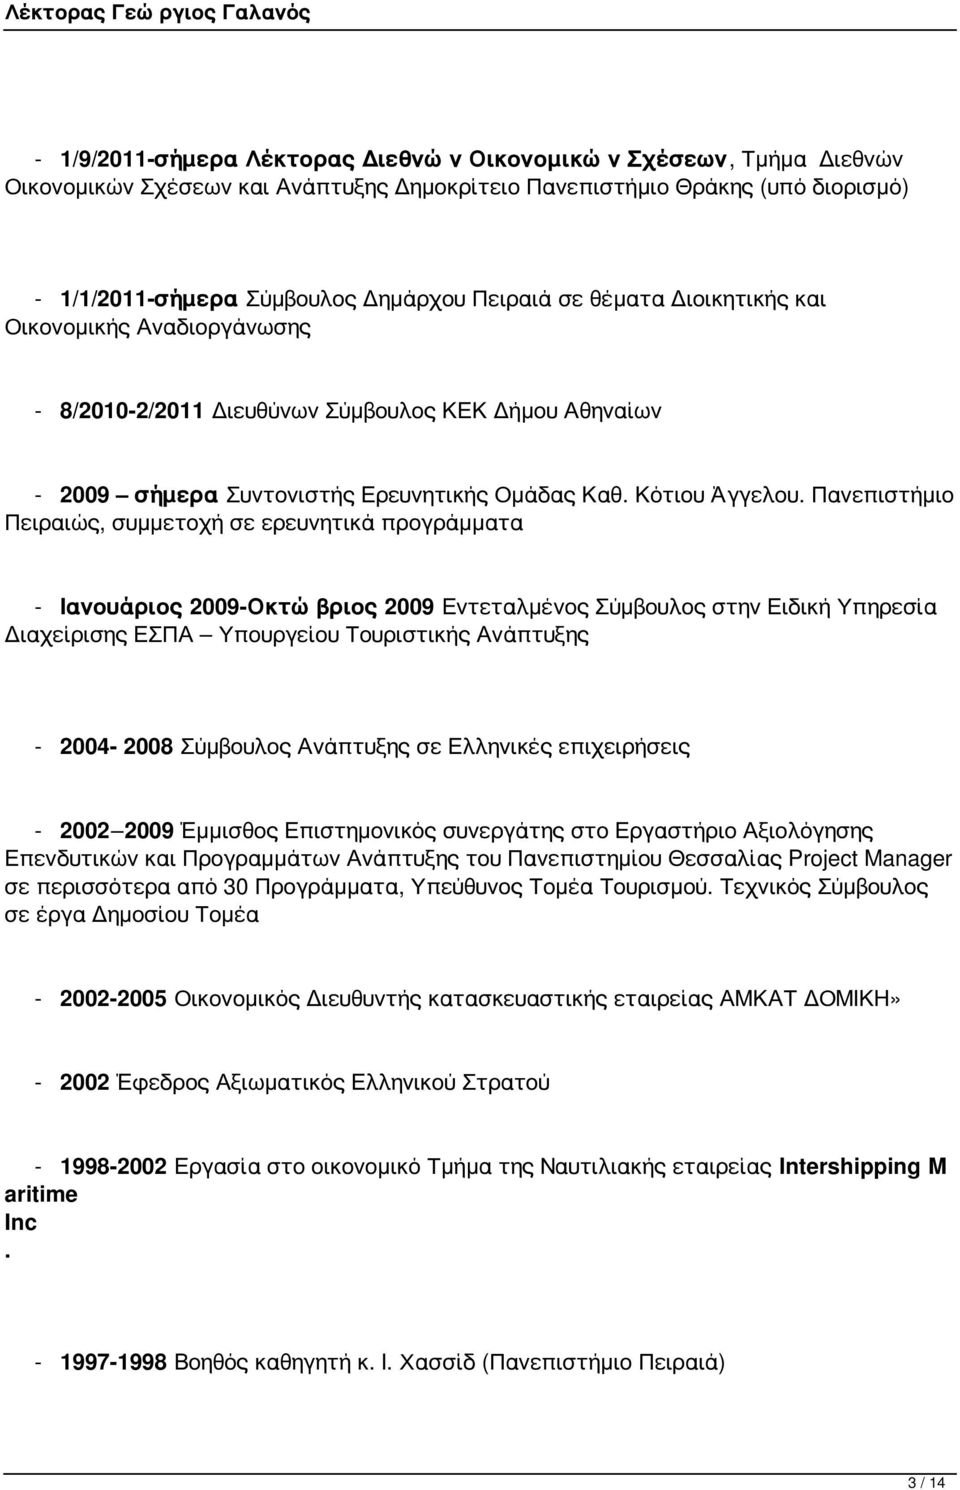 Πανεπιστήμιο Πειραιώς, συμμετοχή σε ερευνητικά προγράμματα - Ιανουάριος 2009-Οκτώβριος 2009 Εντεταλμένος Σύμβουλος στην Ειδική Υπηρεσία Διαχείρισης ΕΣΠΑ Υπουργείου Τουριστικής Ανάπτυξης - 2004-2008